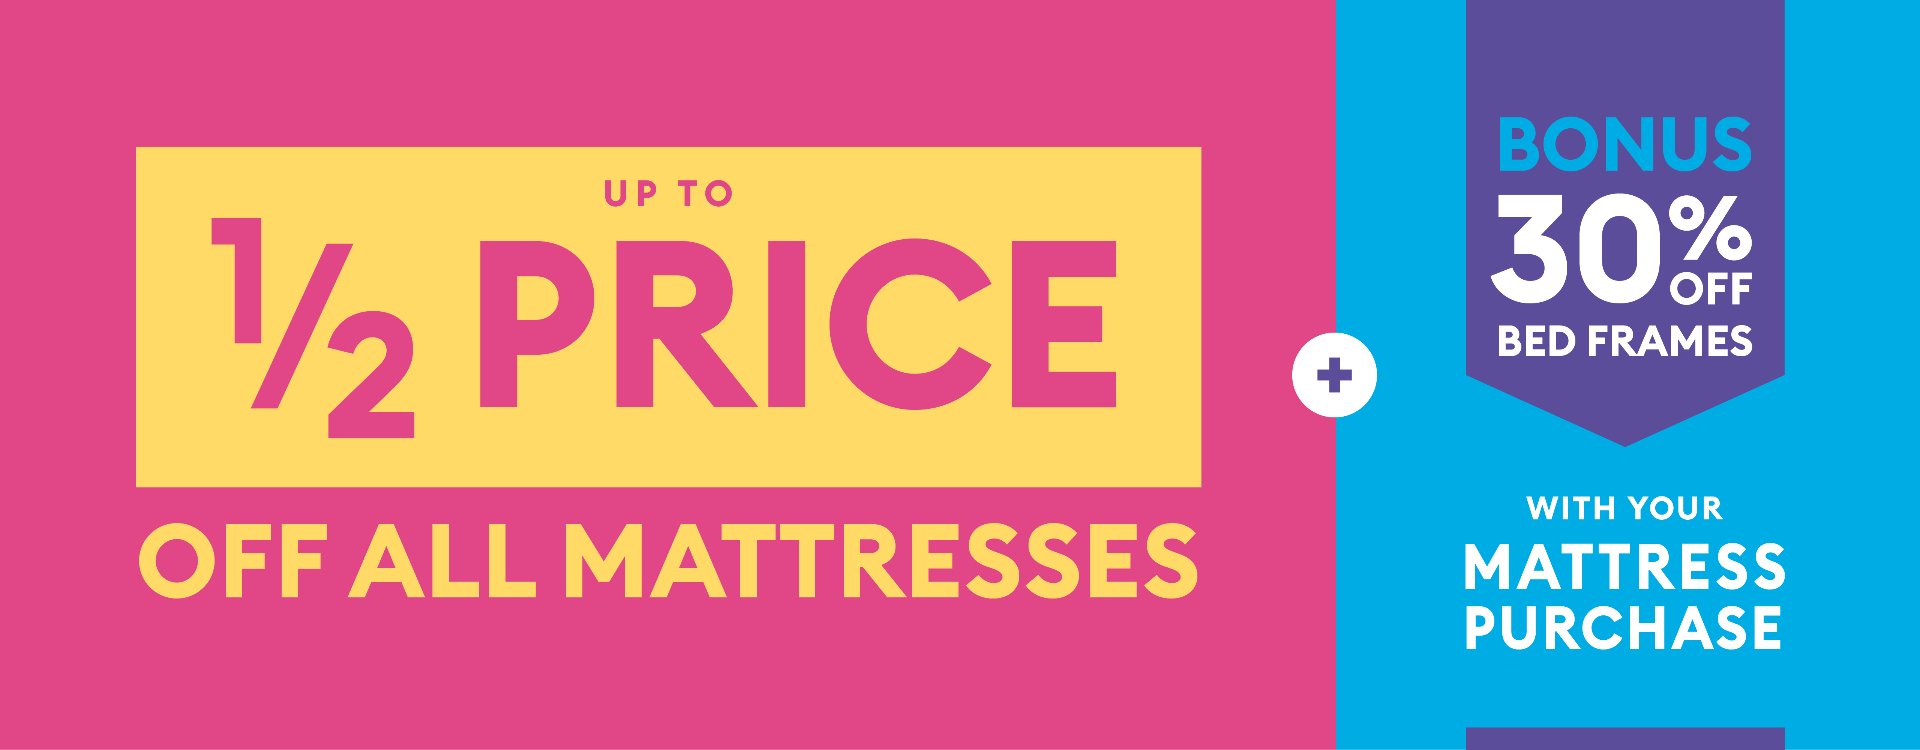 half price mattress englewood fl